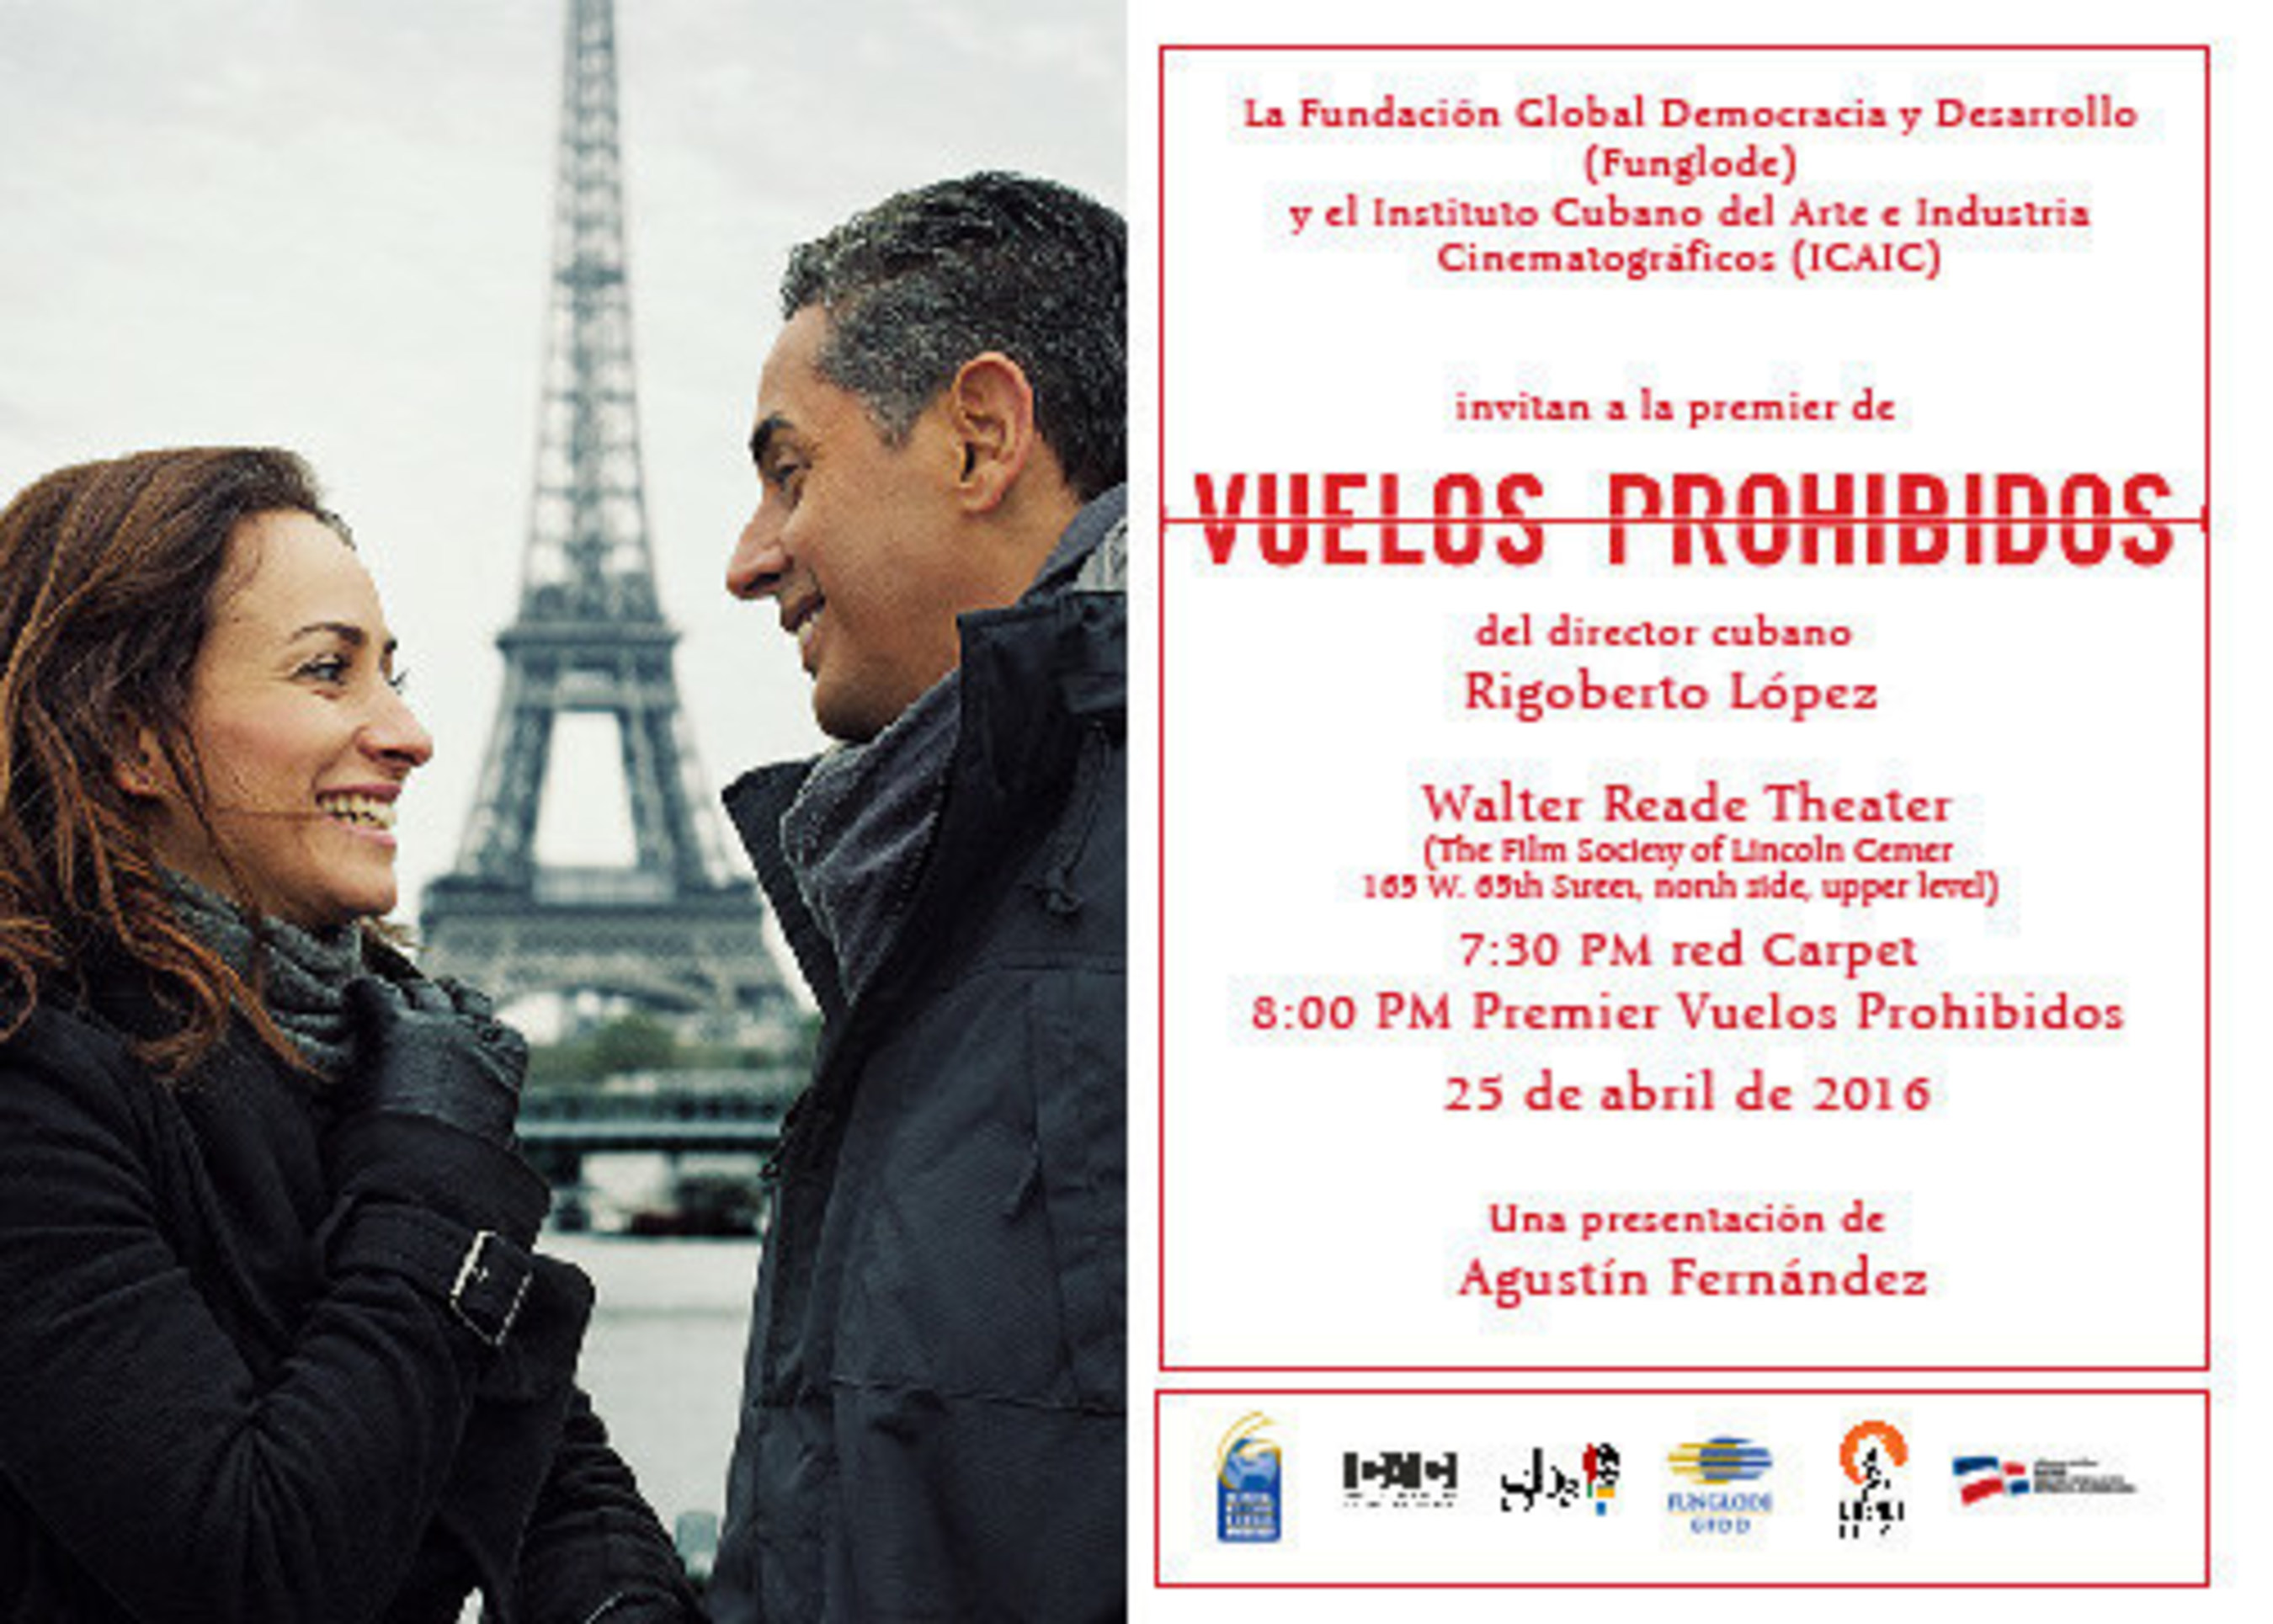 Mega 97.9FM, 93.1FM Amor presentan en Nueva York la cinta cinematografica "Vuelos Prohibidos", de Rigoberto Lopez